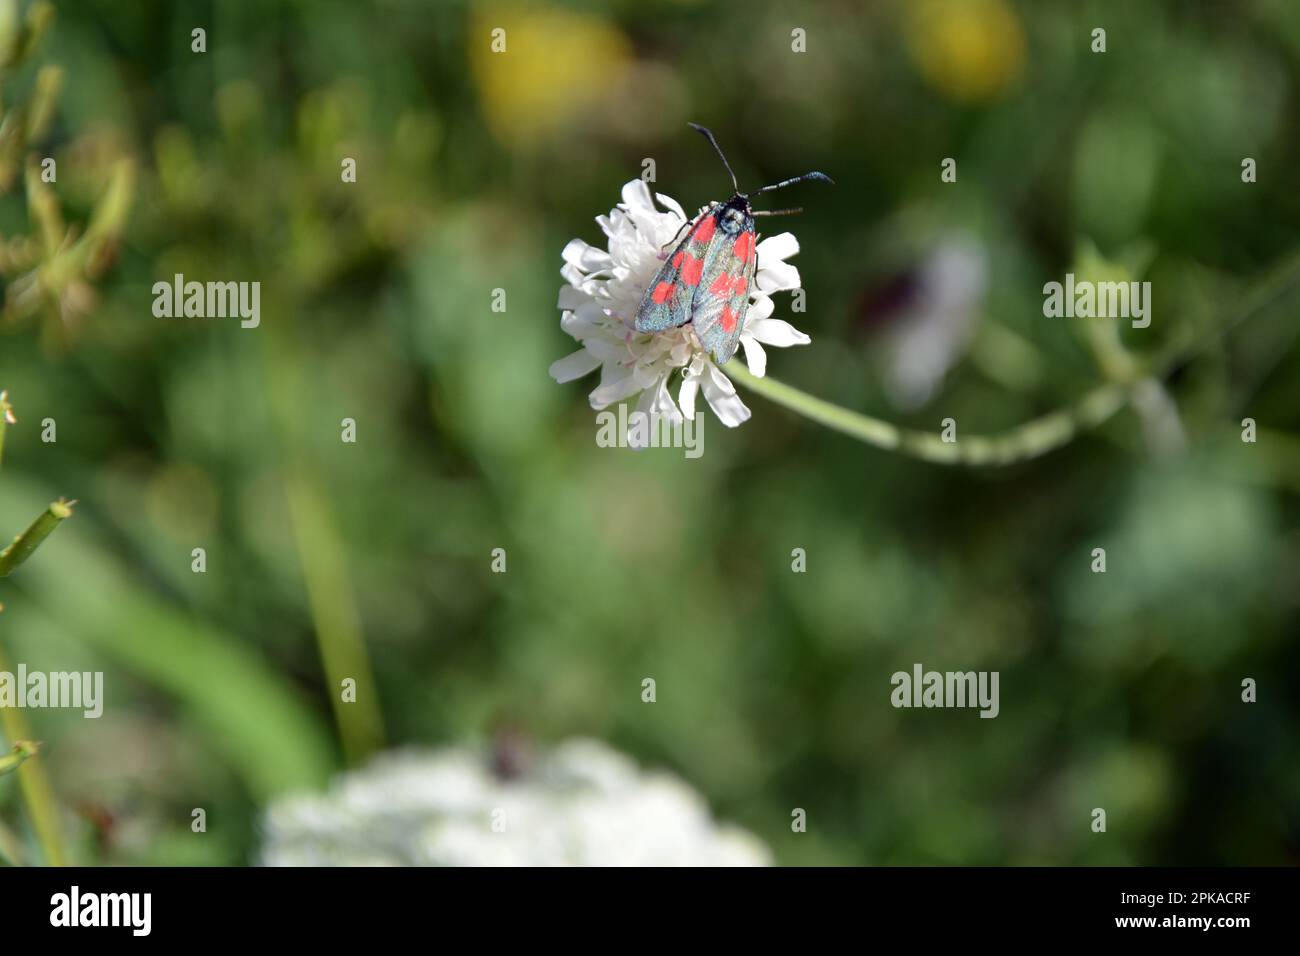 Primo piano di un burnet a sei punti (Zygaena filipendulae) su un fiore bianco con sfondo verde sfocato. Immagine orizzontale con messa a fuoco e copia selettive Foto Stock